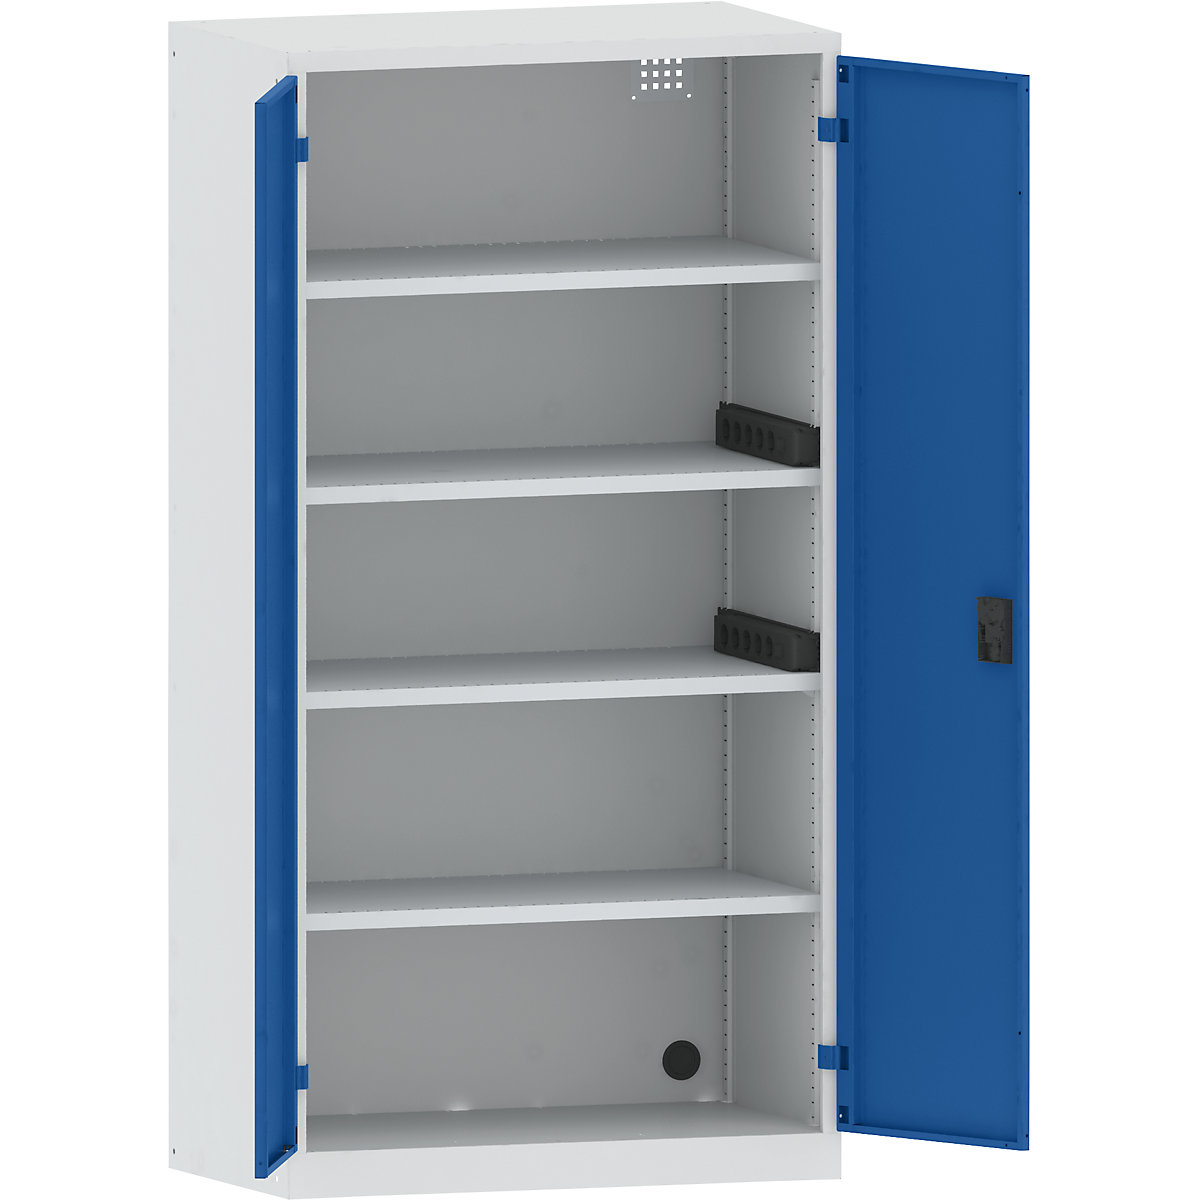 LISTA – Skříň pro nabíjení akumulátorů, 4 police, plné plechové dveře, 2 boční zásuvkové lišty, šedá / modrá